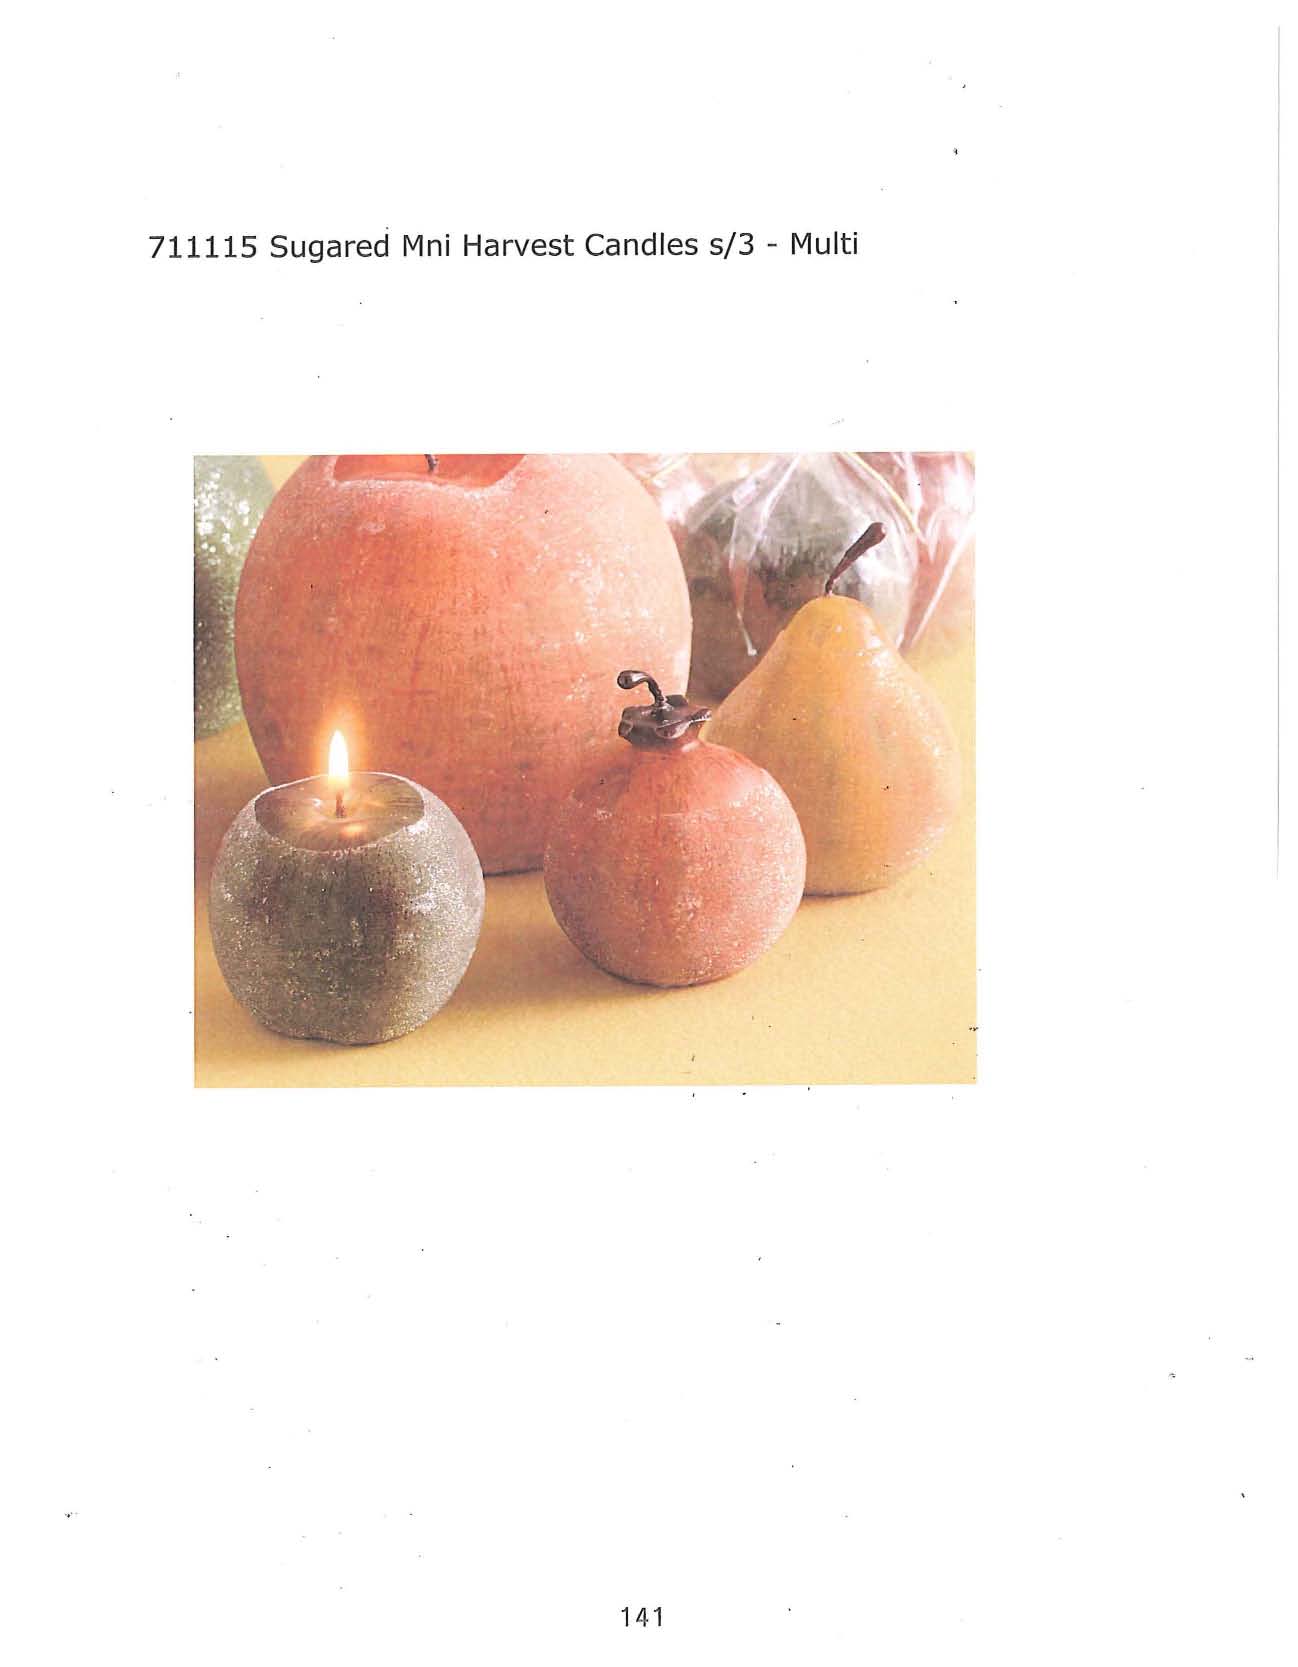 Sugared Mini Harvest Candle s/3 - Multi